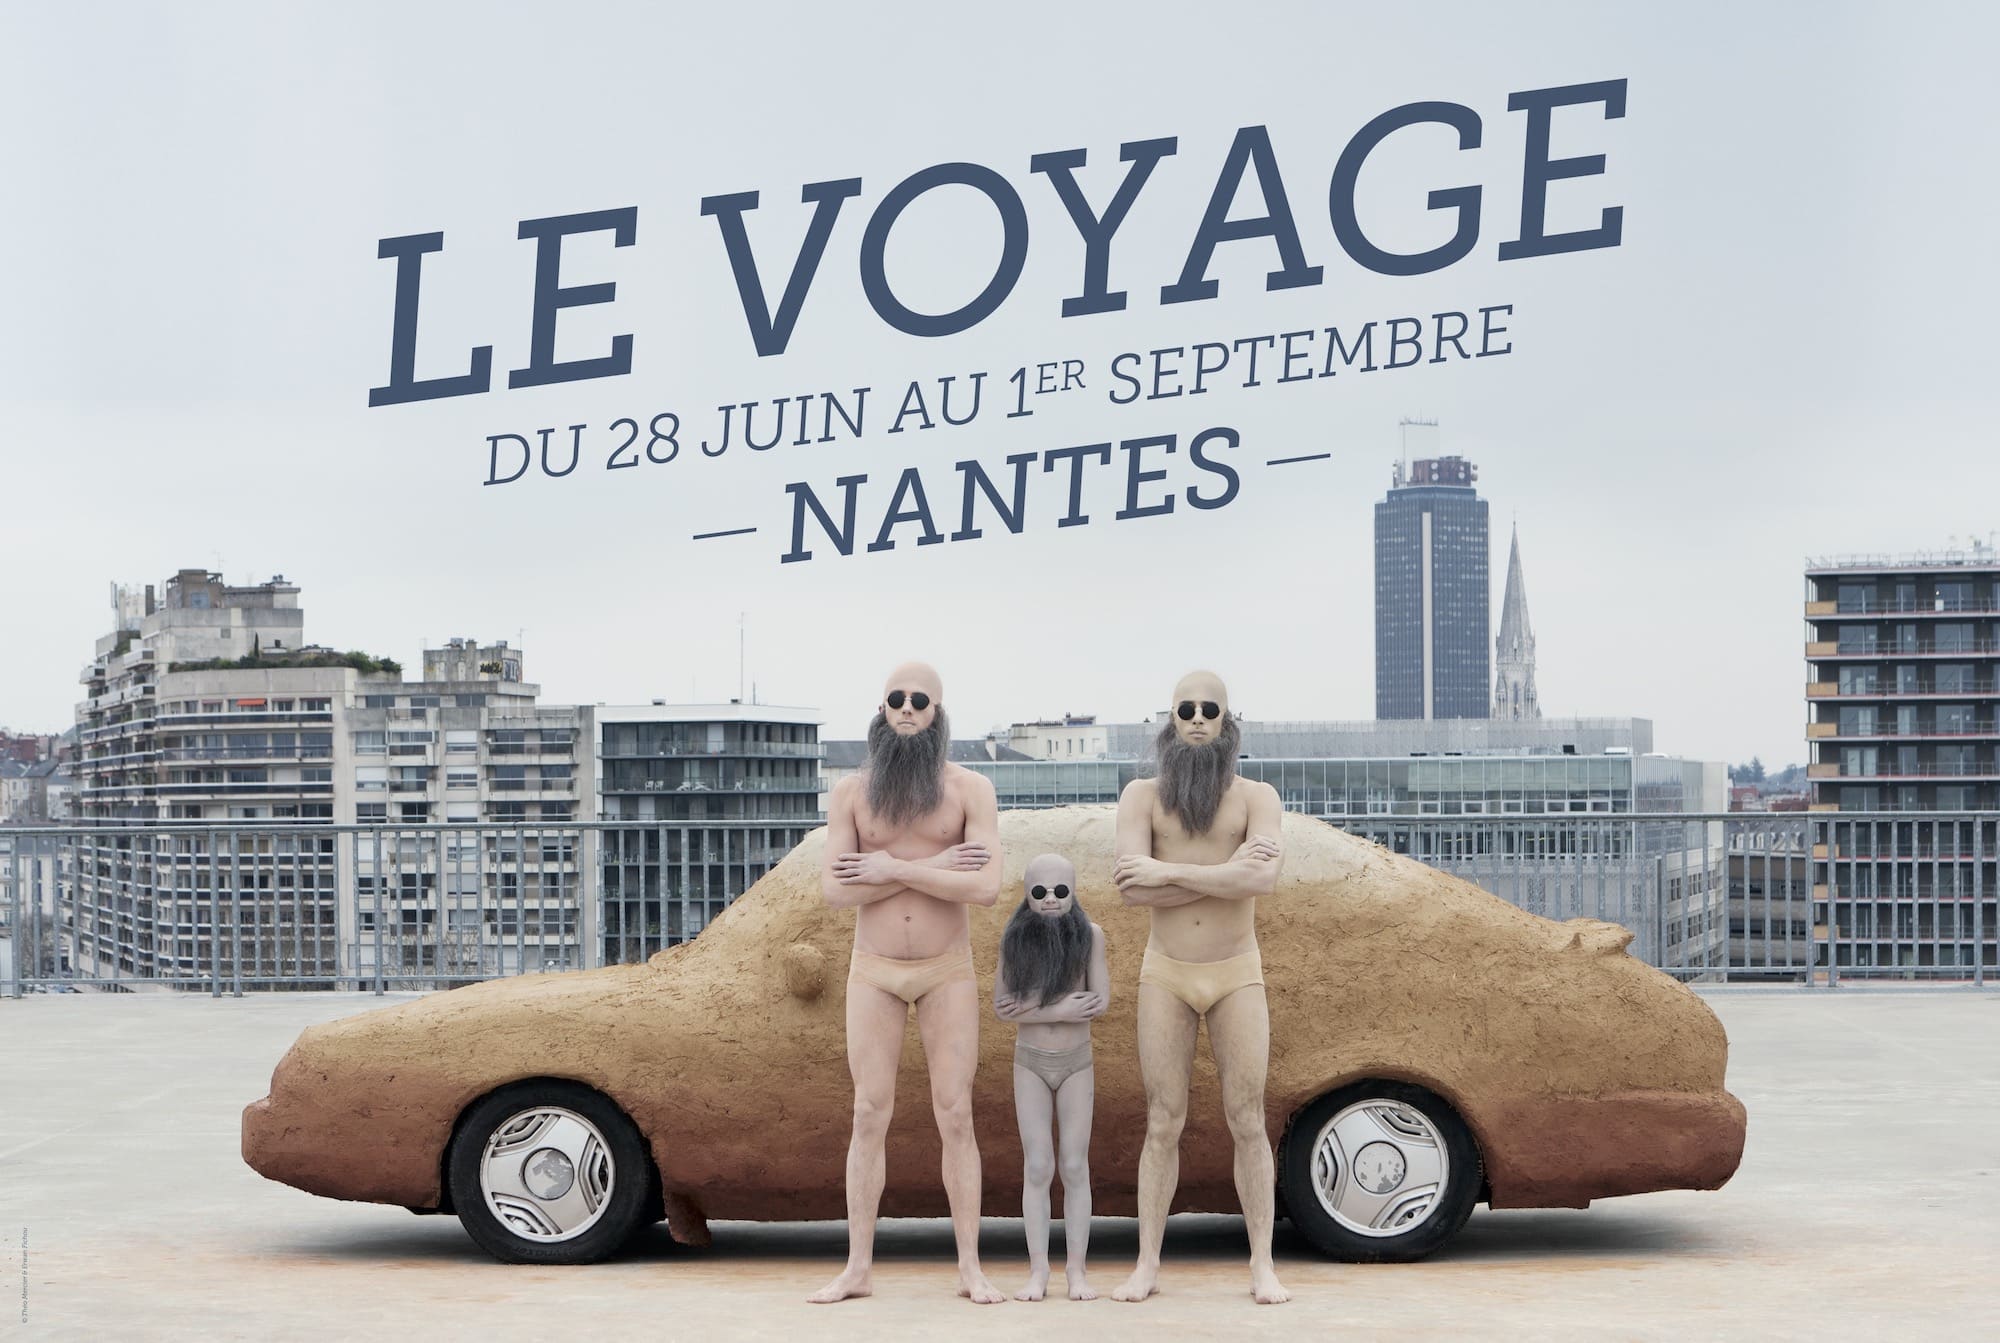 Visuel de l'édition 2013, Le Voyage à Nantes